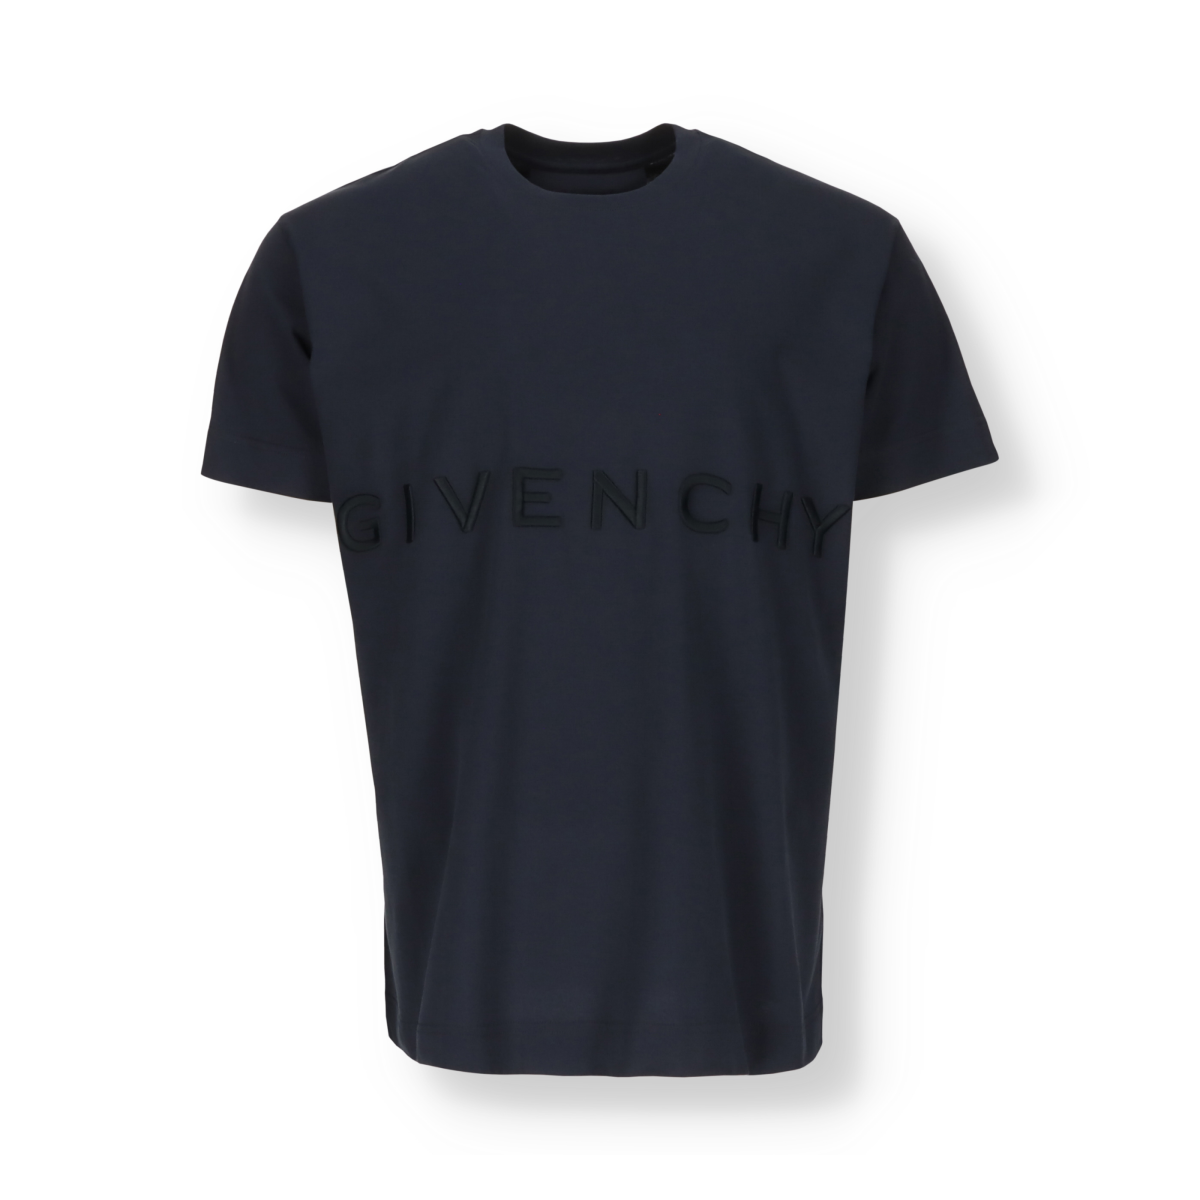 Givenchy T-shirt